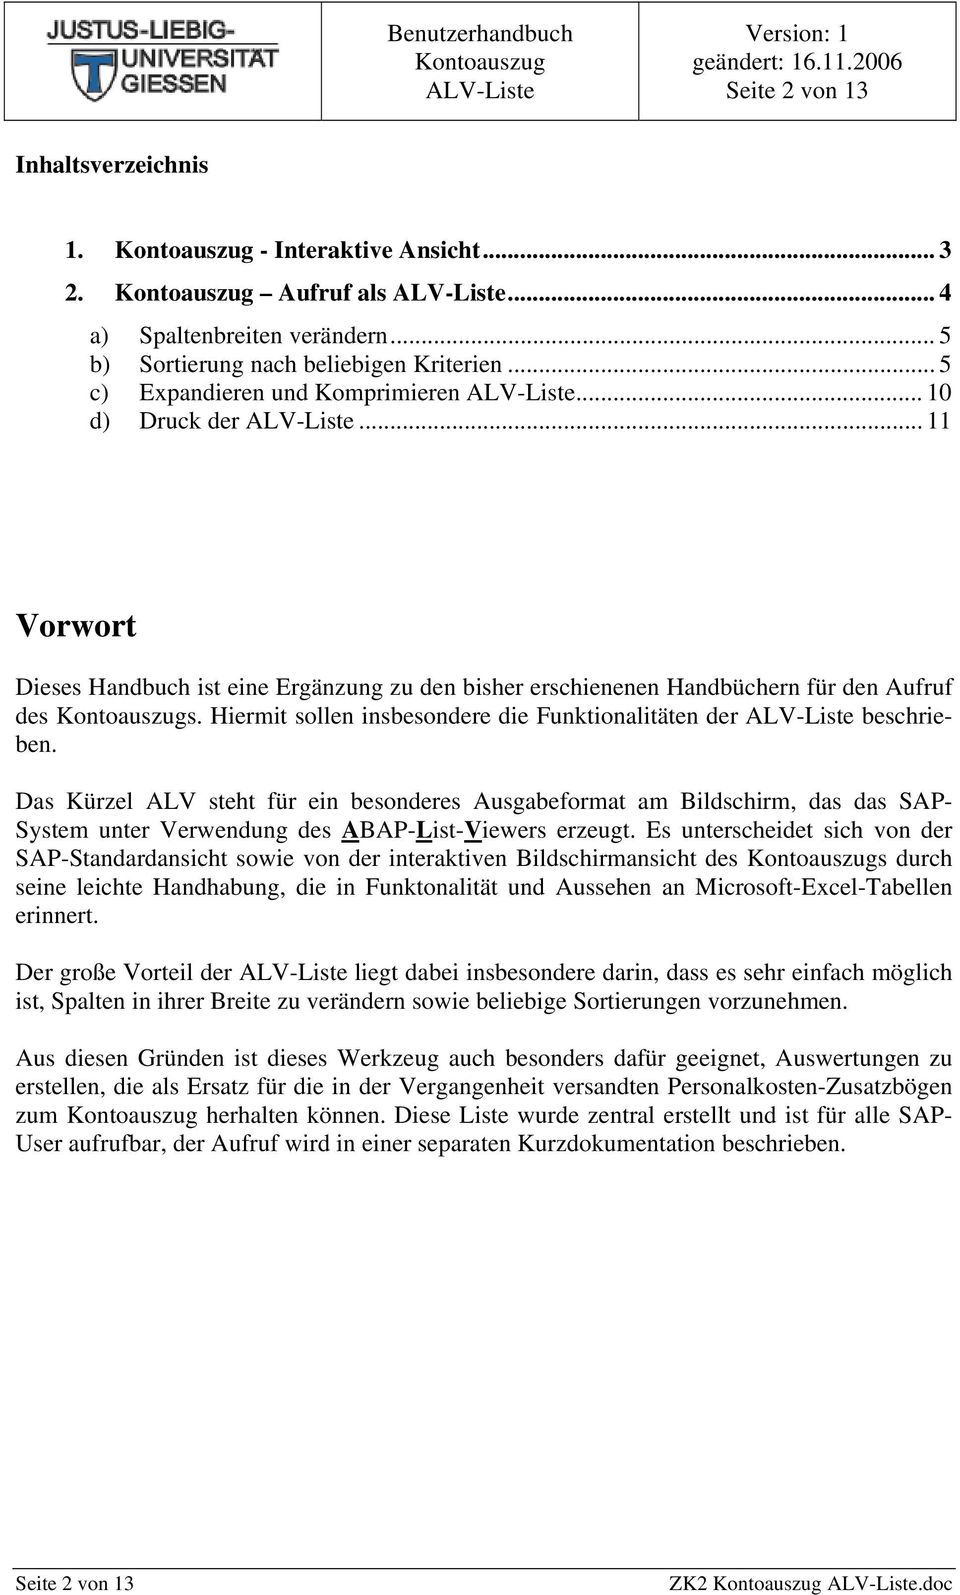 Das Kürzel ALV steht für ein besonderes Ausgabeformat am Bildschirm, das das SAP- System unter Verwendung des ABAP-List-Viewers erzeugt.